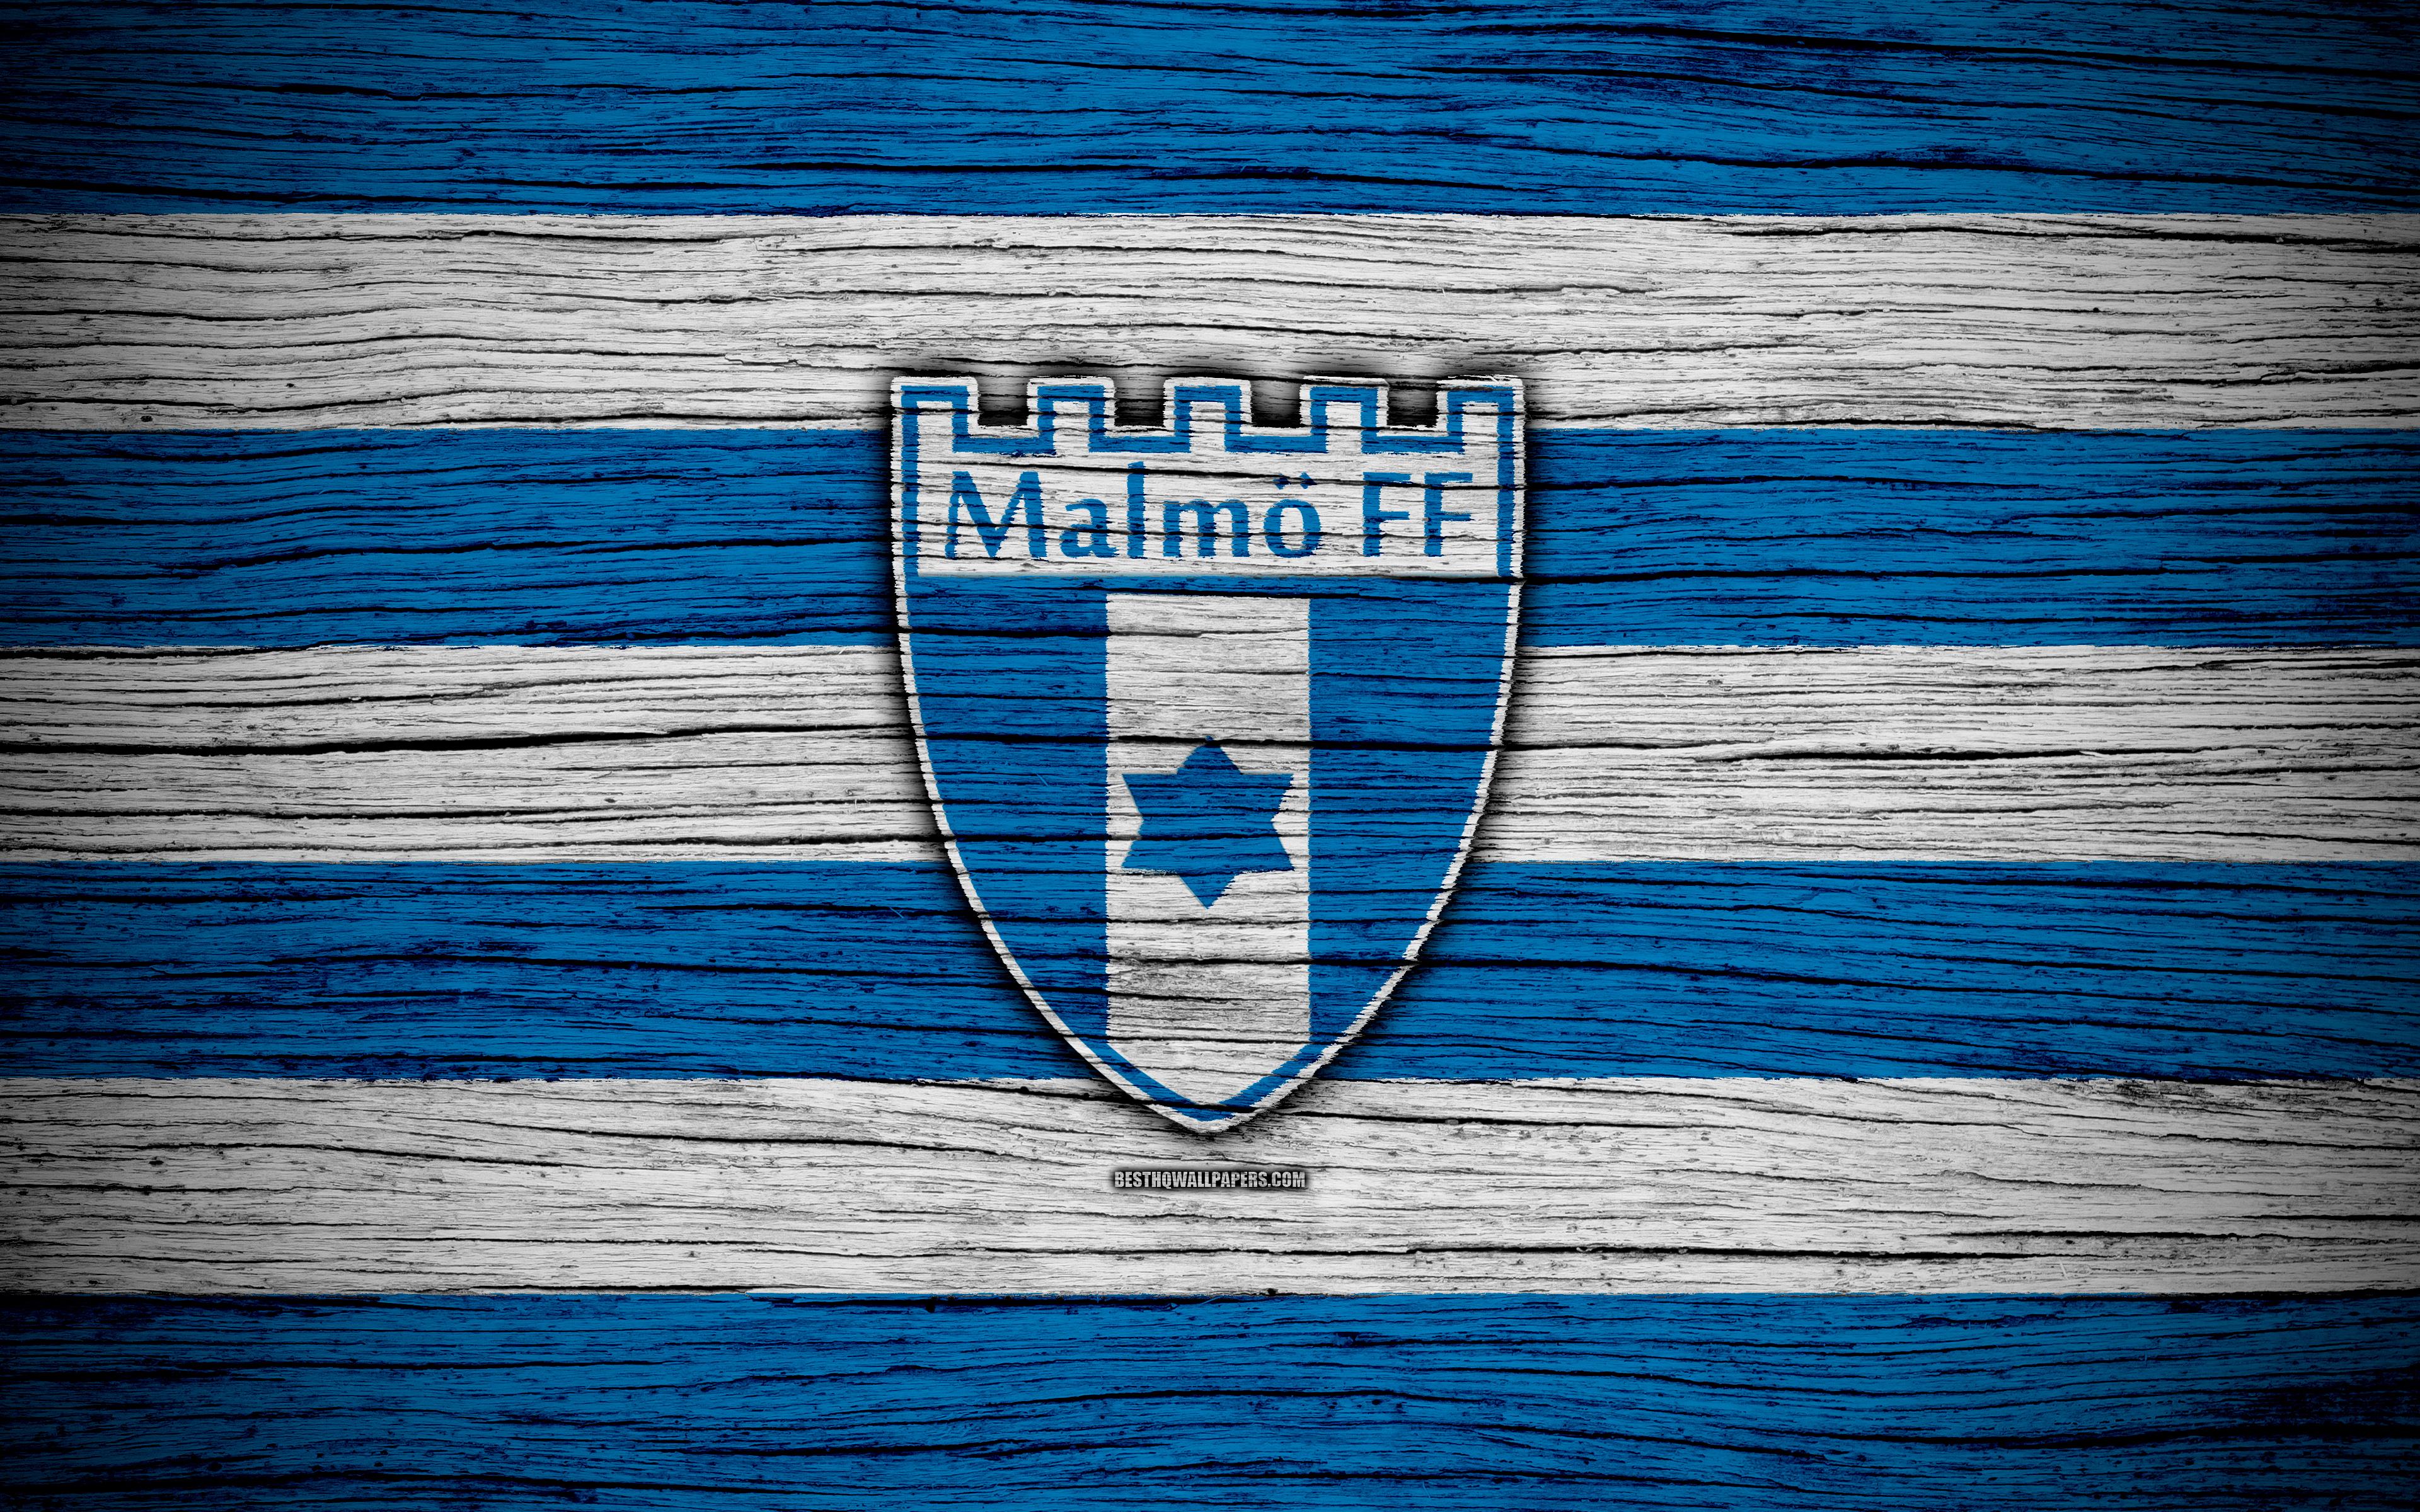 Download wallpaper Malmo FC, 4k, Allsvenskan, soccer, football club